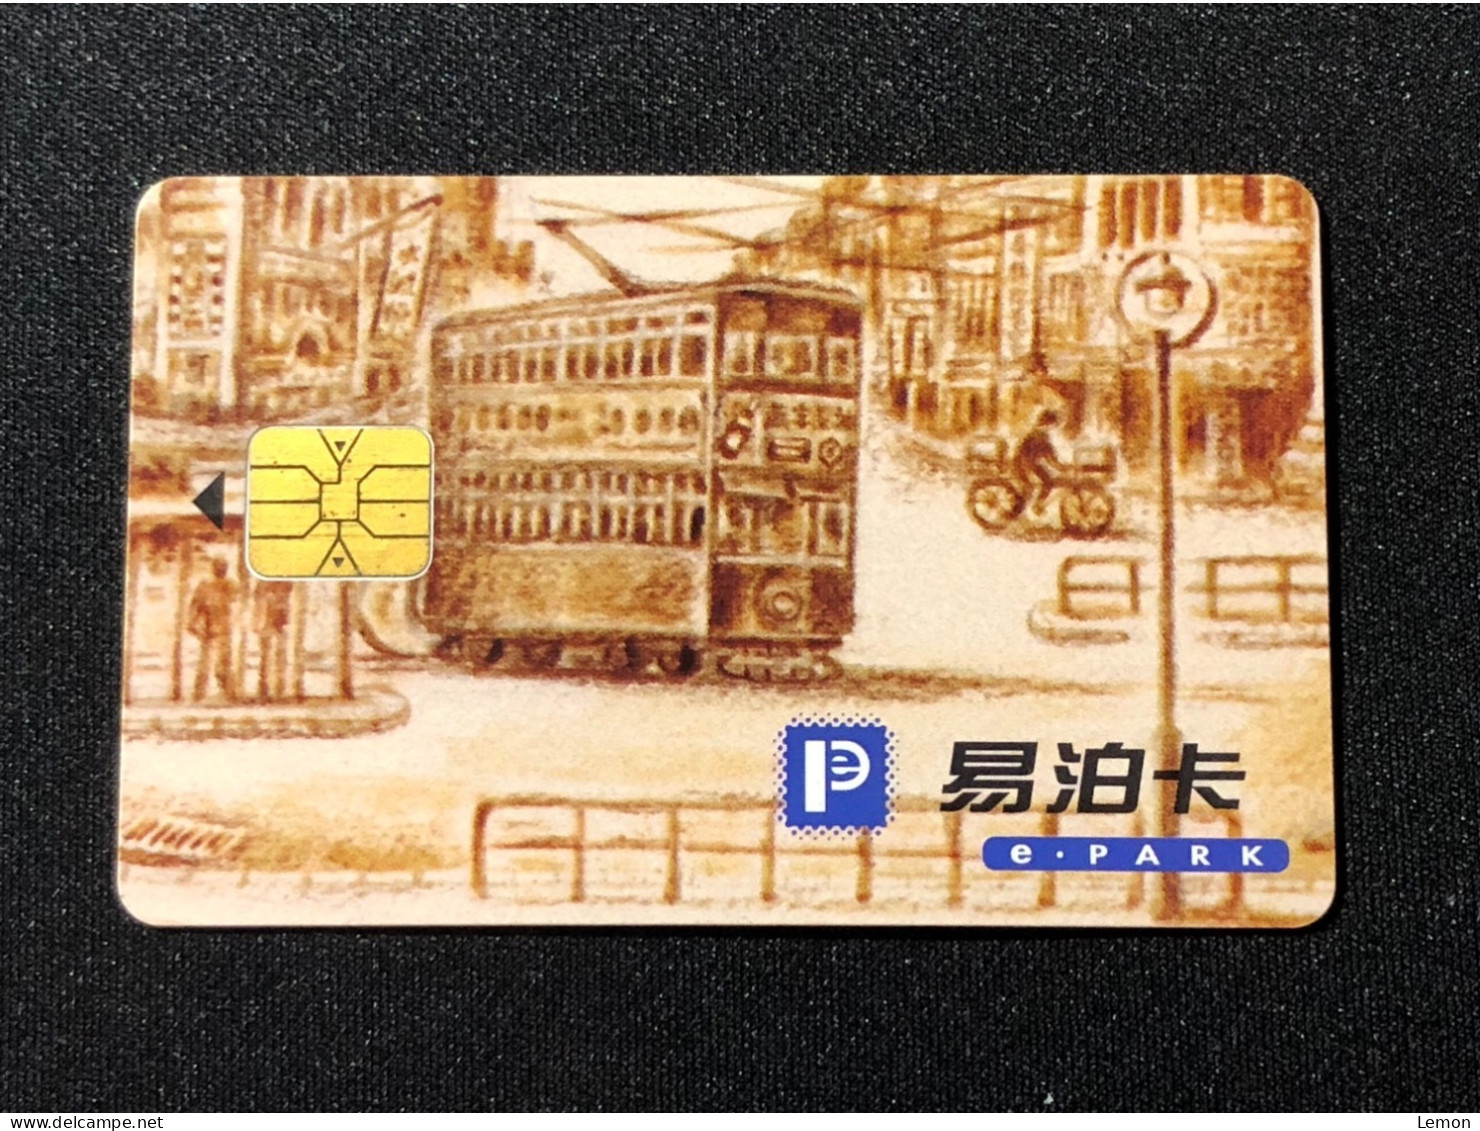 Hong Kong Smart Card Chip Card Cash Card CashCard, E.PARK, Set Of 1 Mint Card - Hong Kong